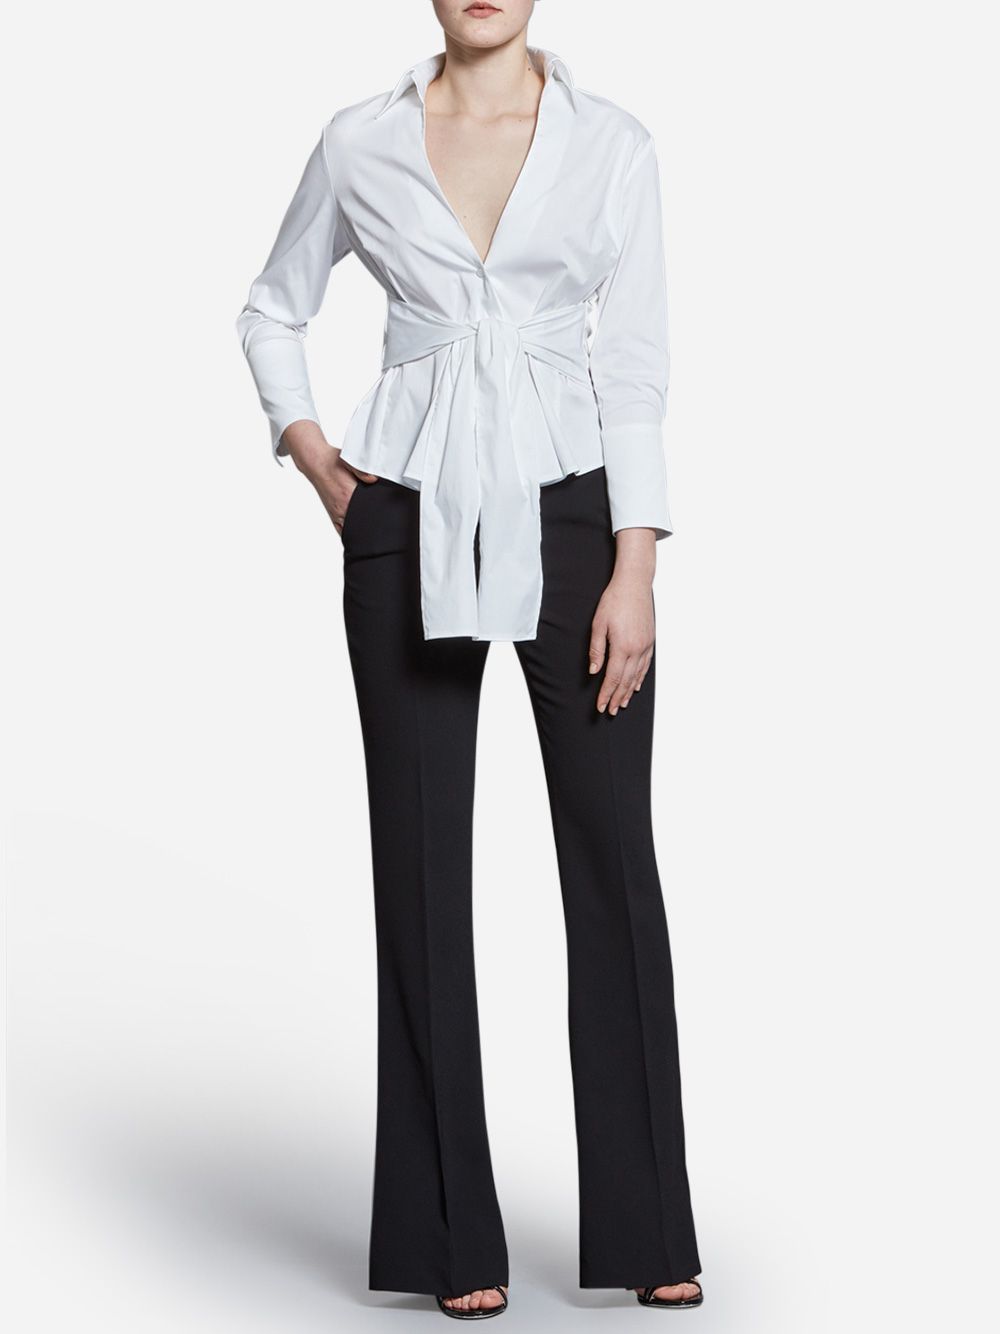 Blusa Branca Monica com Cinto | A-line Clothing